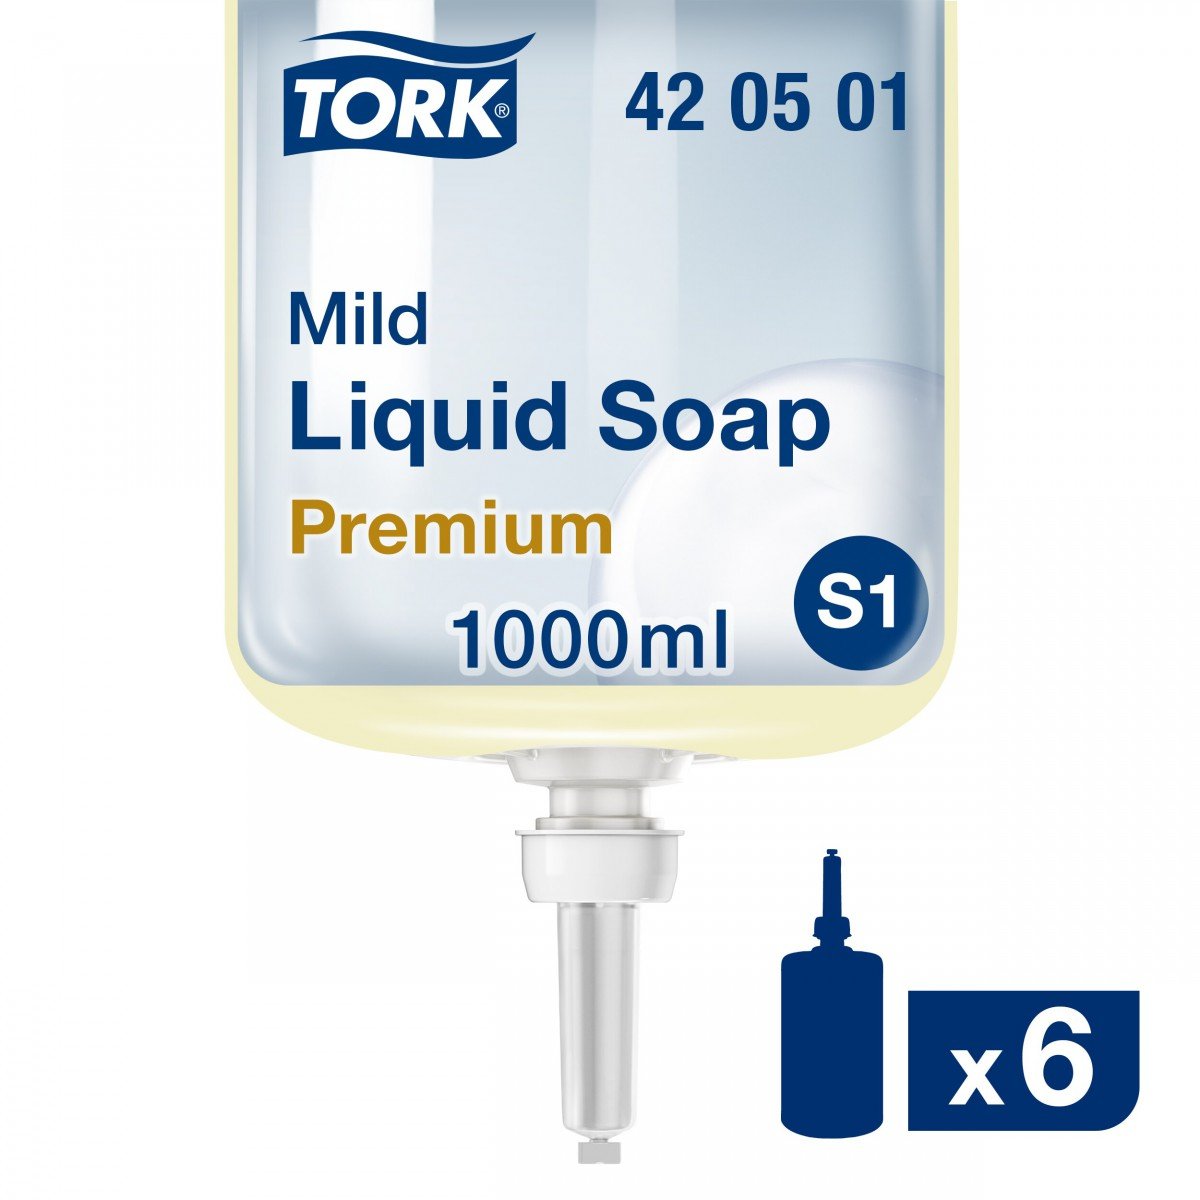 Tork Mildly Scented Liquid Soap